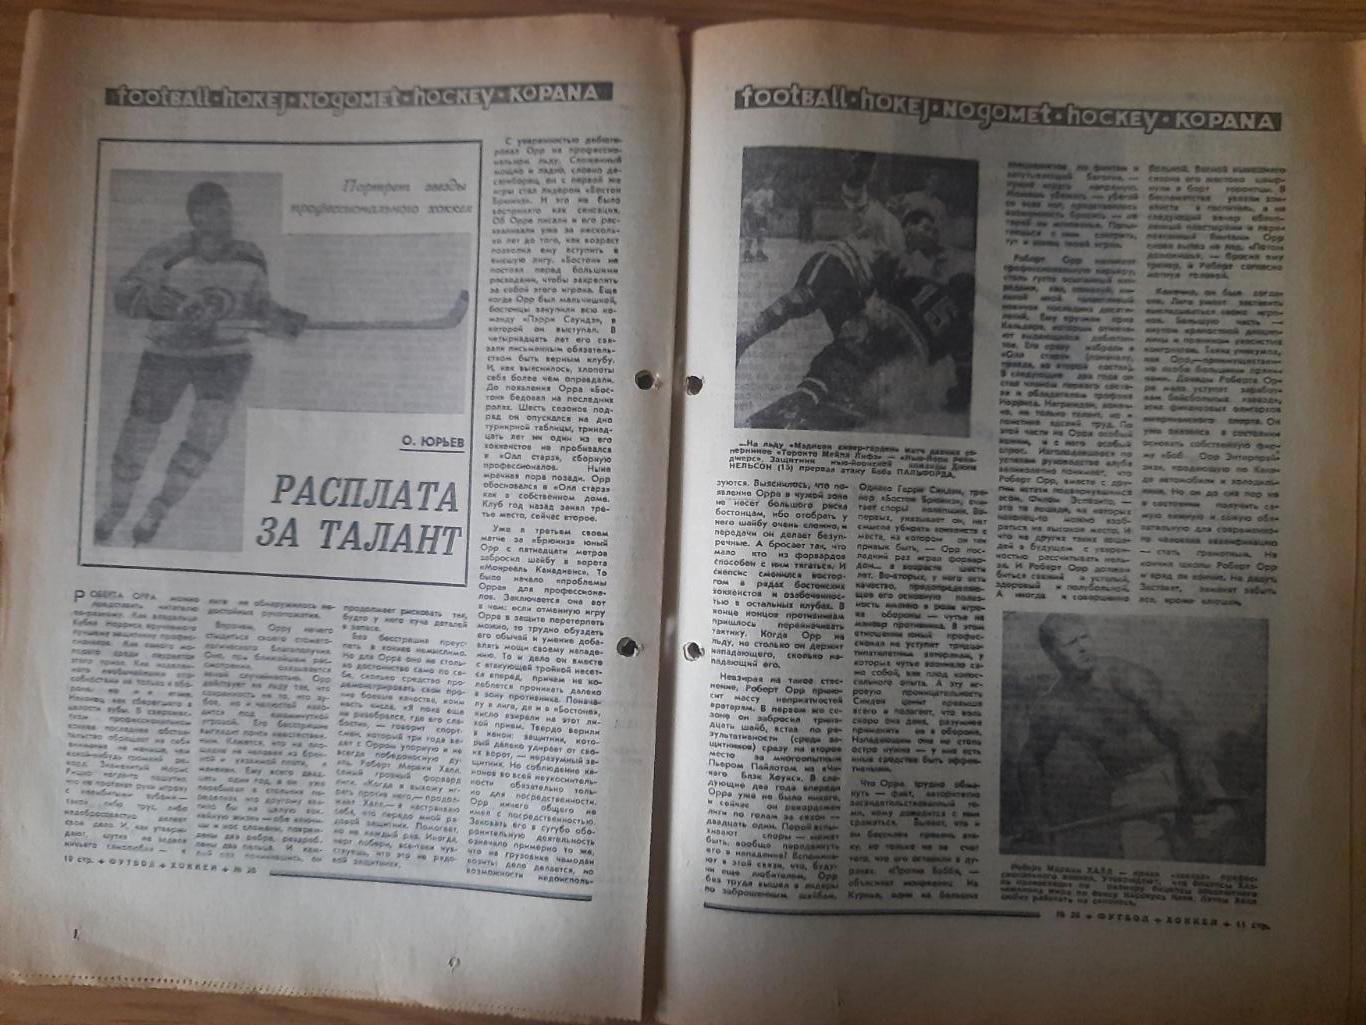 еженедельник футбол-хоккей #26, 1969. 3